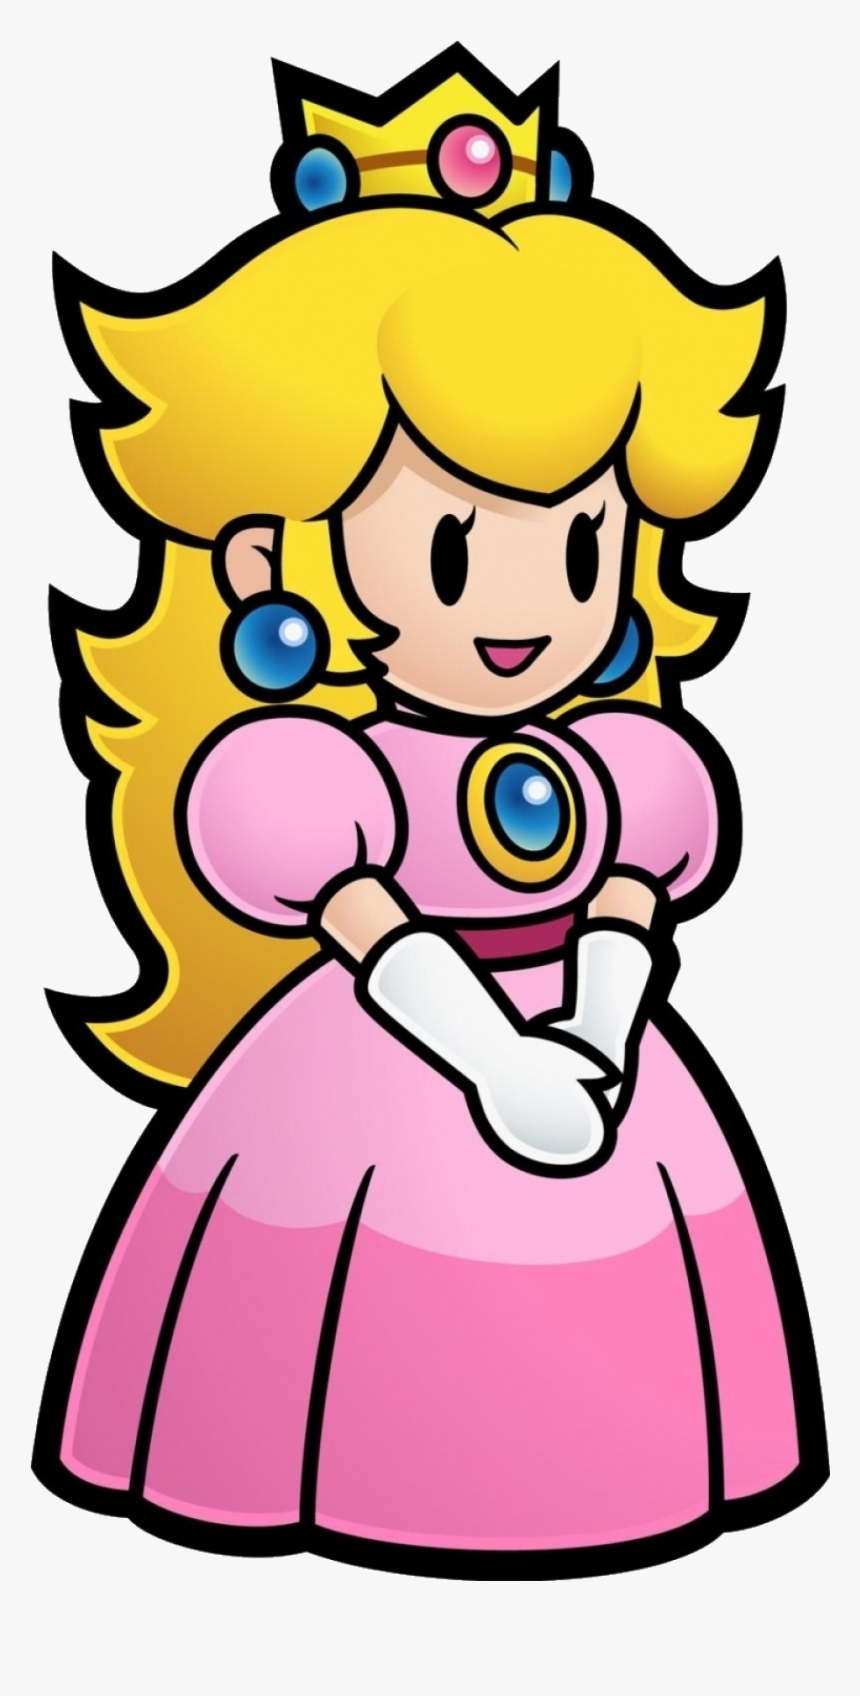 Mario Super Vector Artwork Bxbmxxpeach Princess Peach - Princess Peach ...